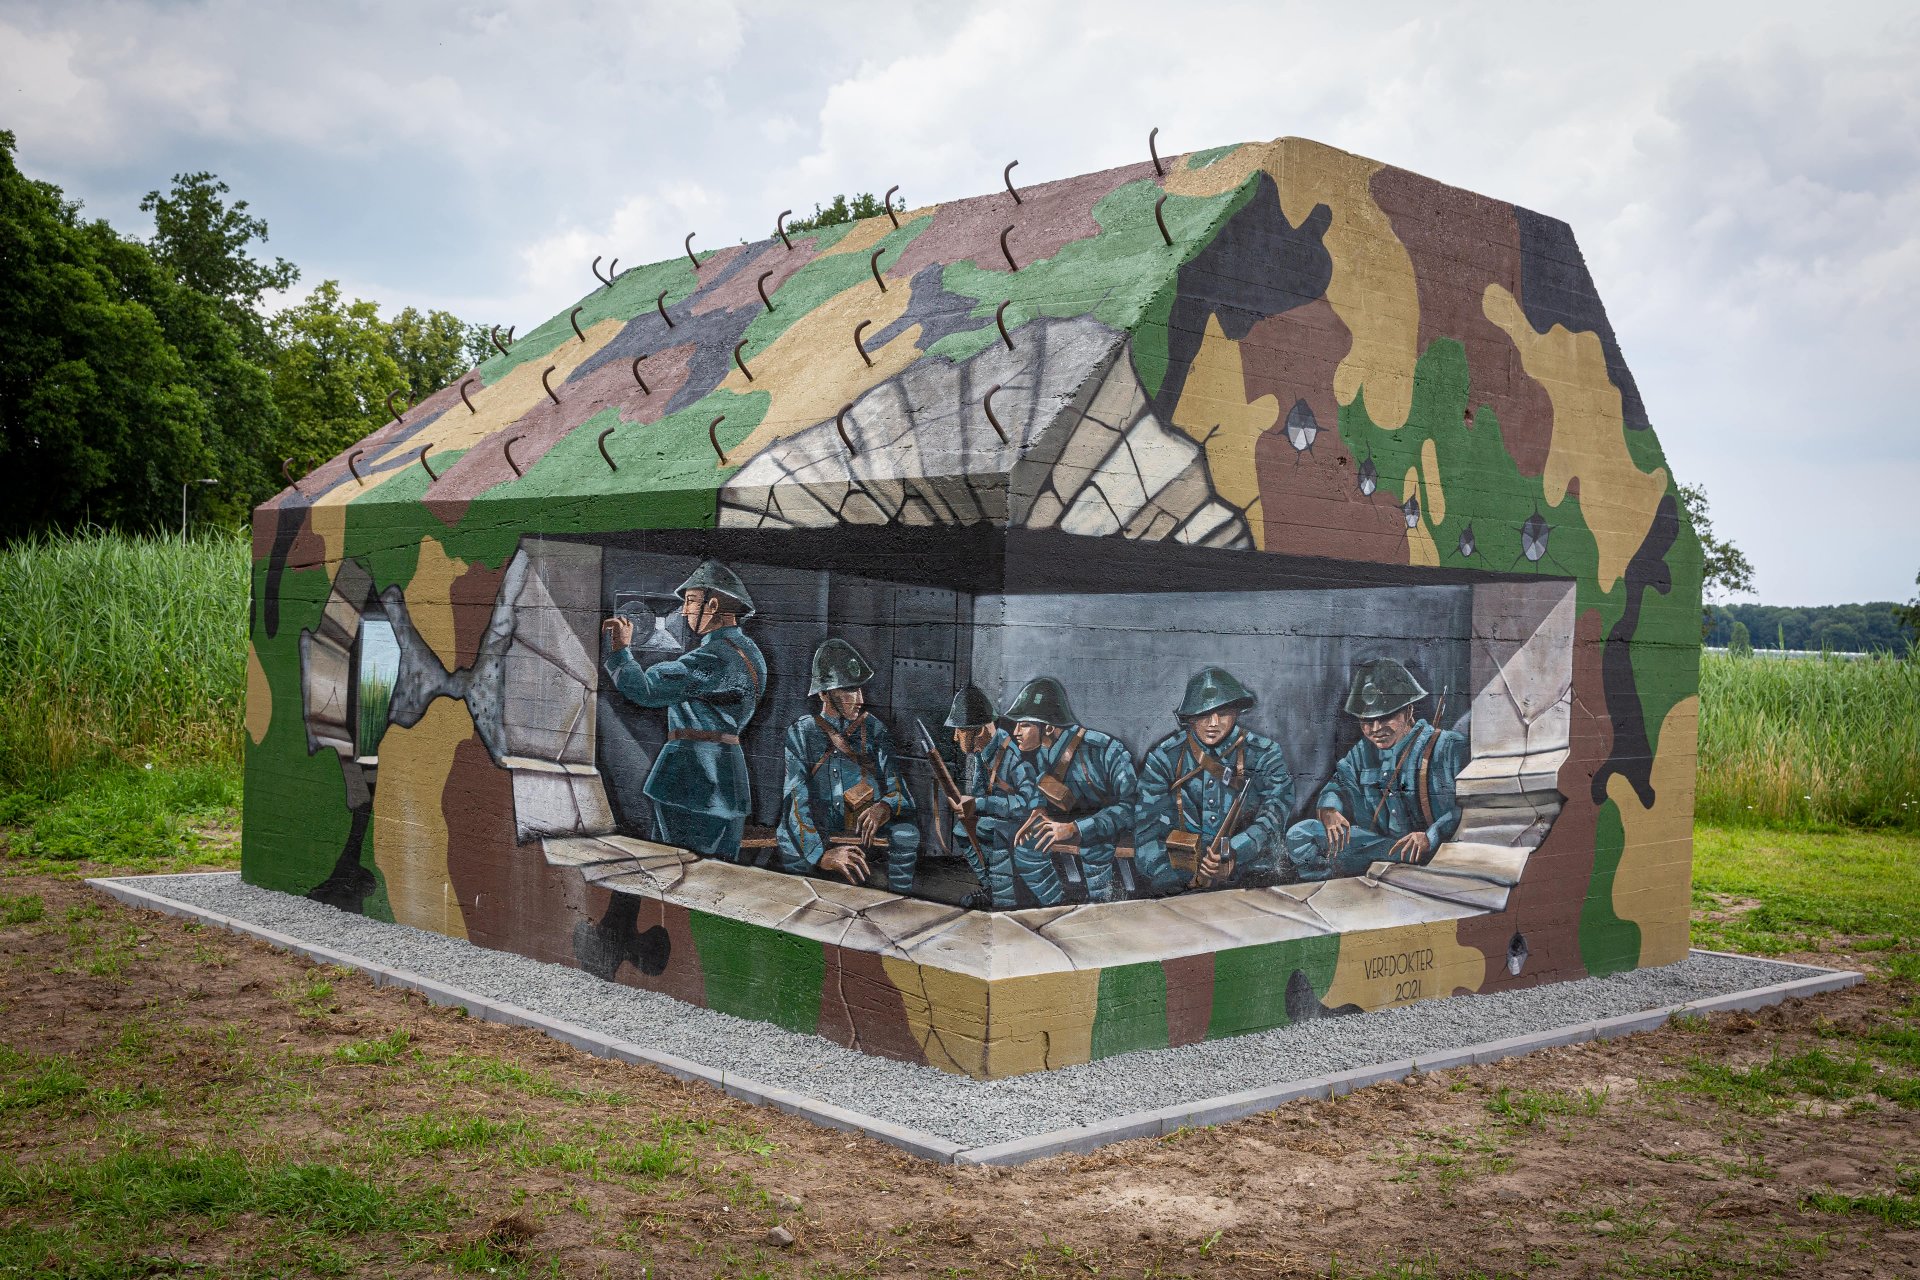 beschilderde groepsschuilplaats. Op de groepsschuilplaats zijn soldaten in de bunker afgebeeld, de bunker is beschilderd met legerprint